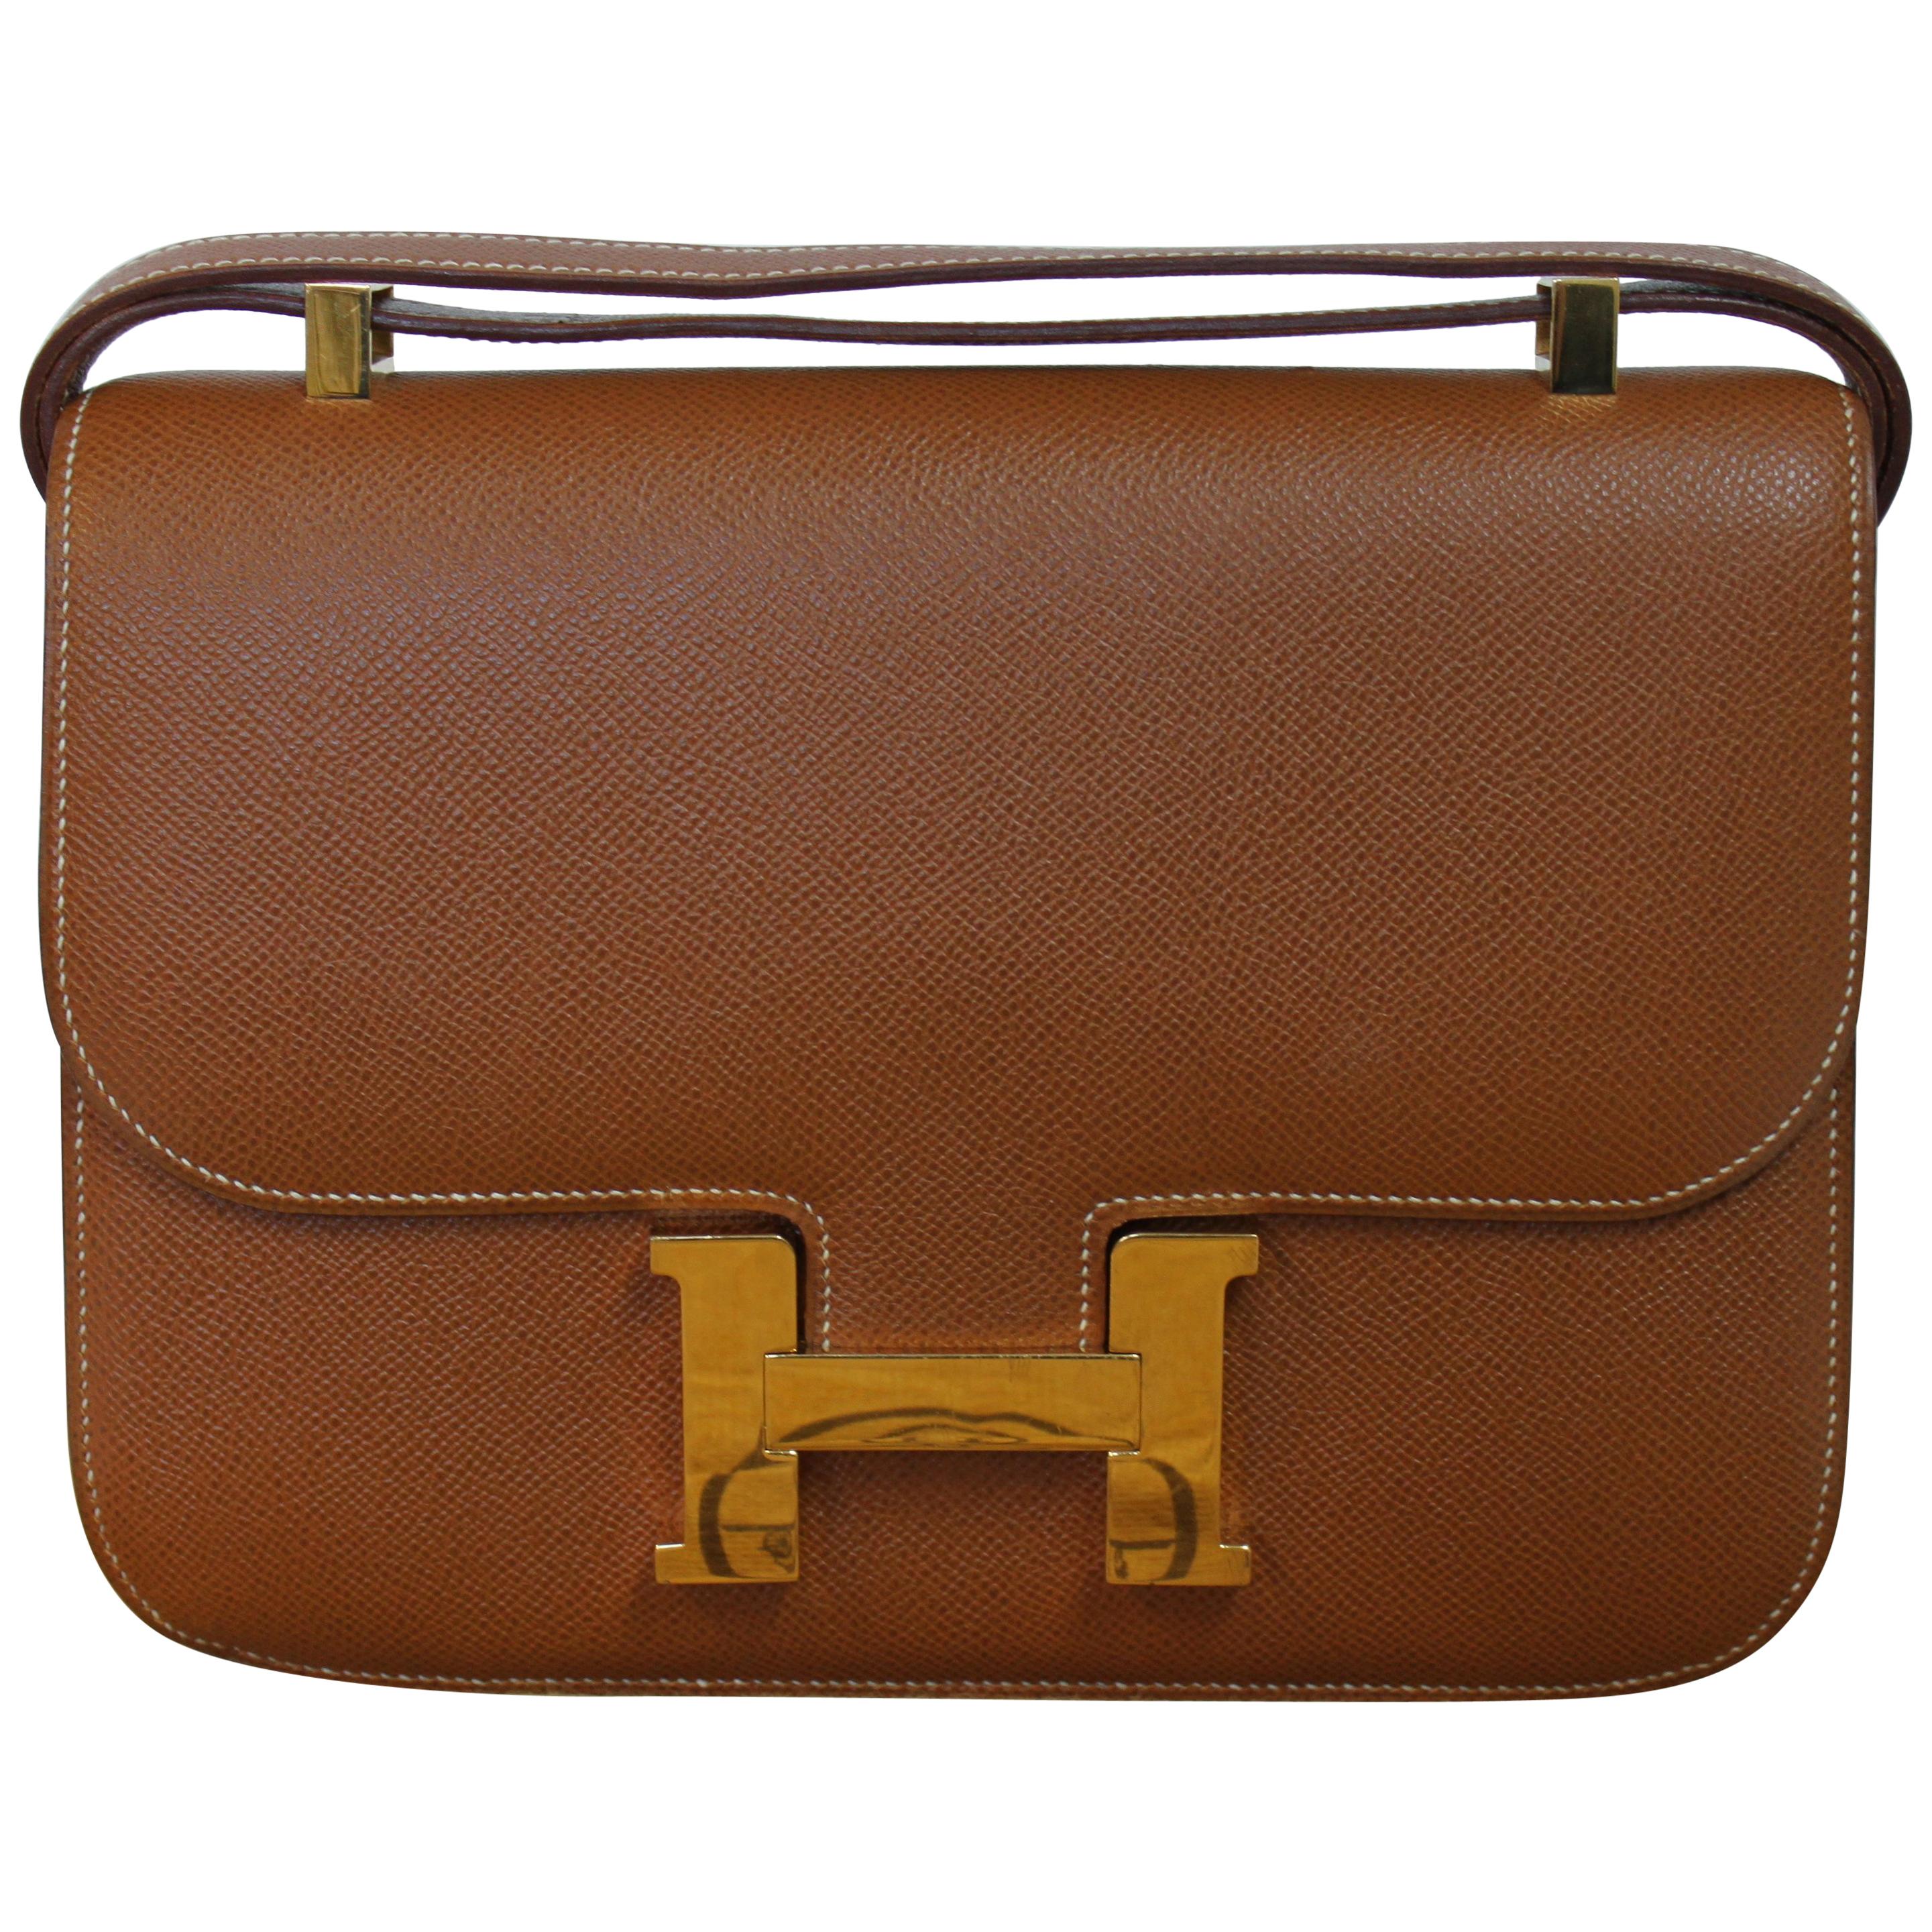 Hermes Constance 24 Shoulder Bag brown/tan epsom leather with gold Hardware For Sale